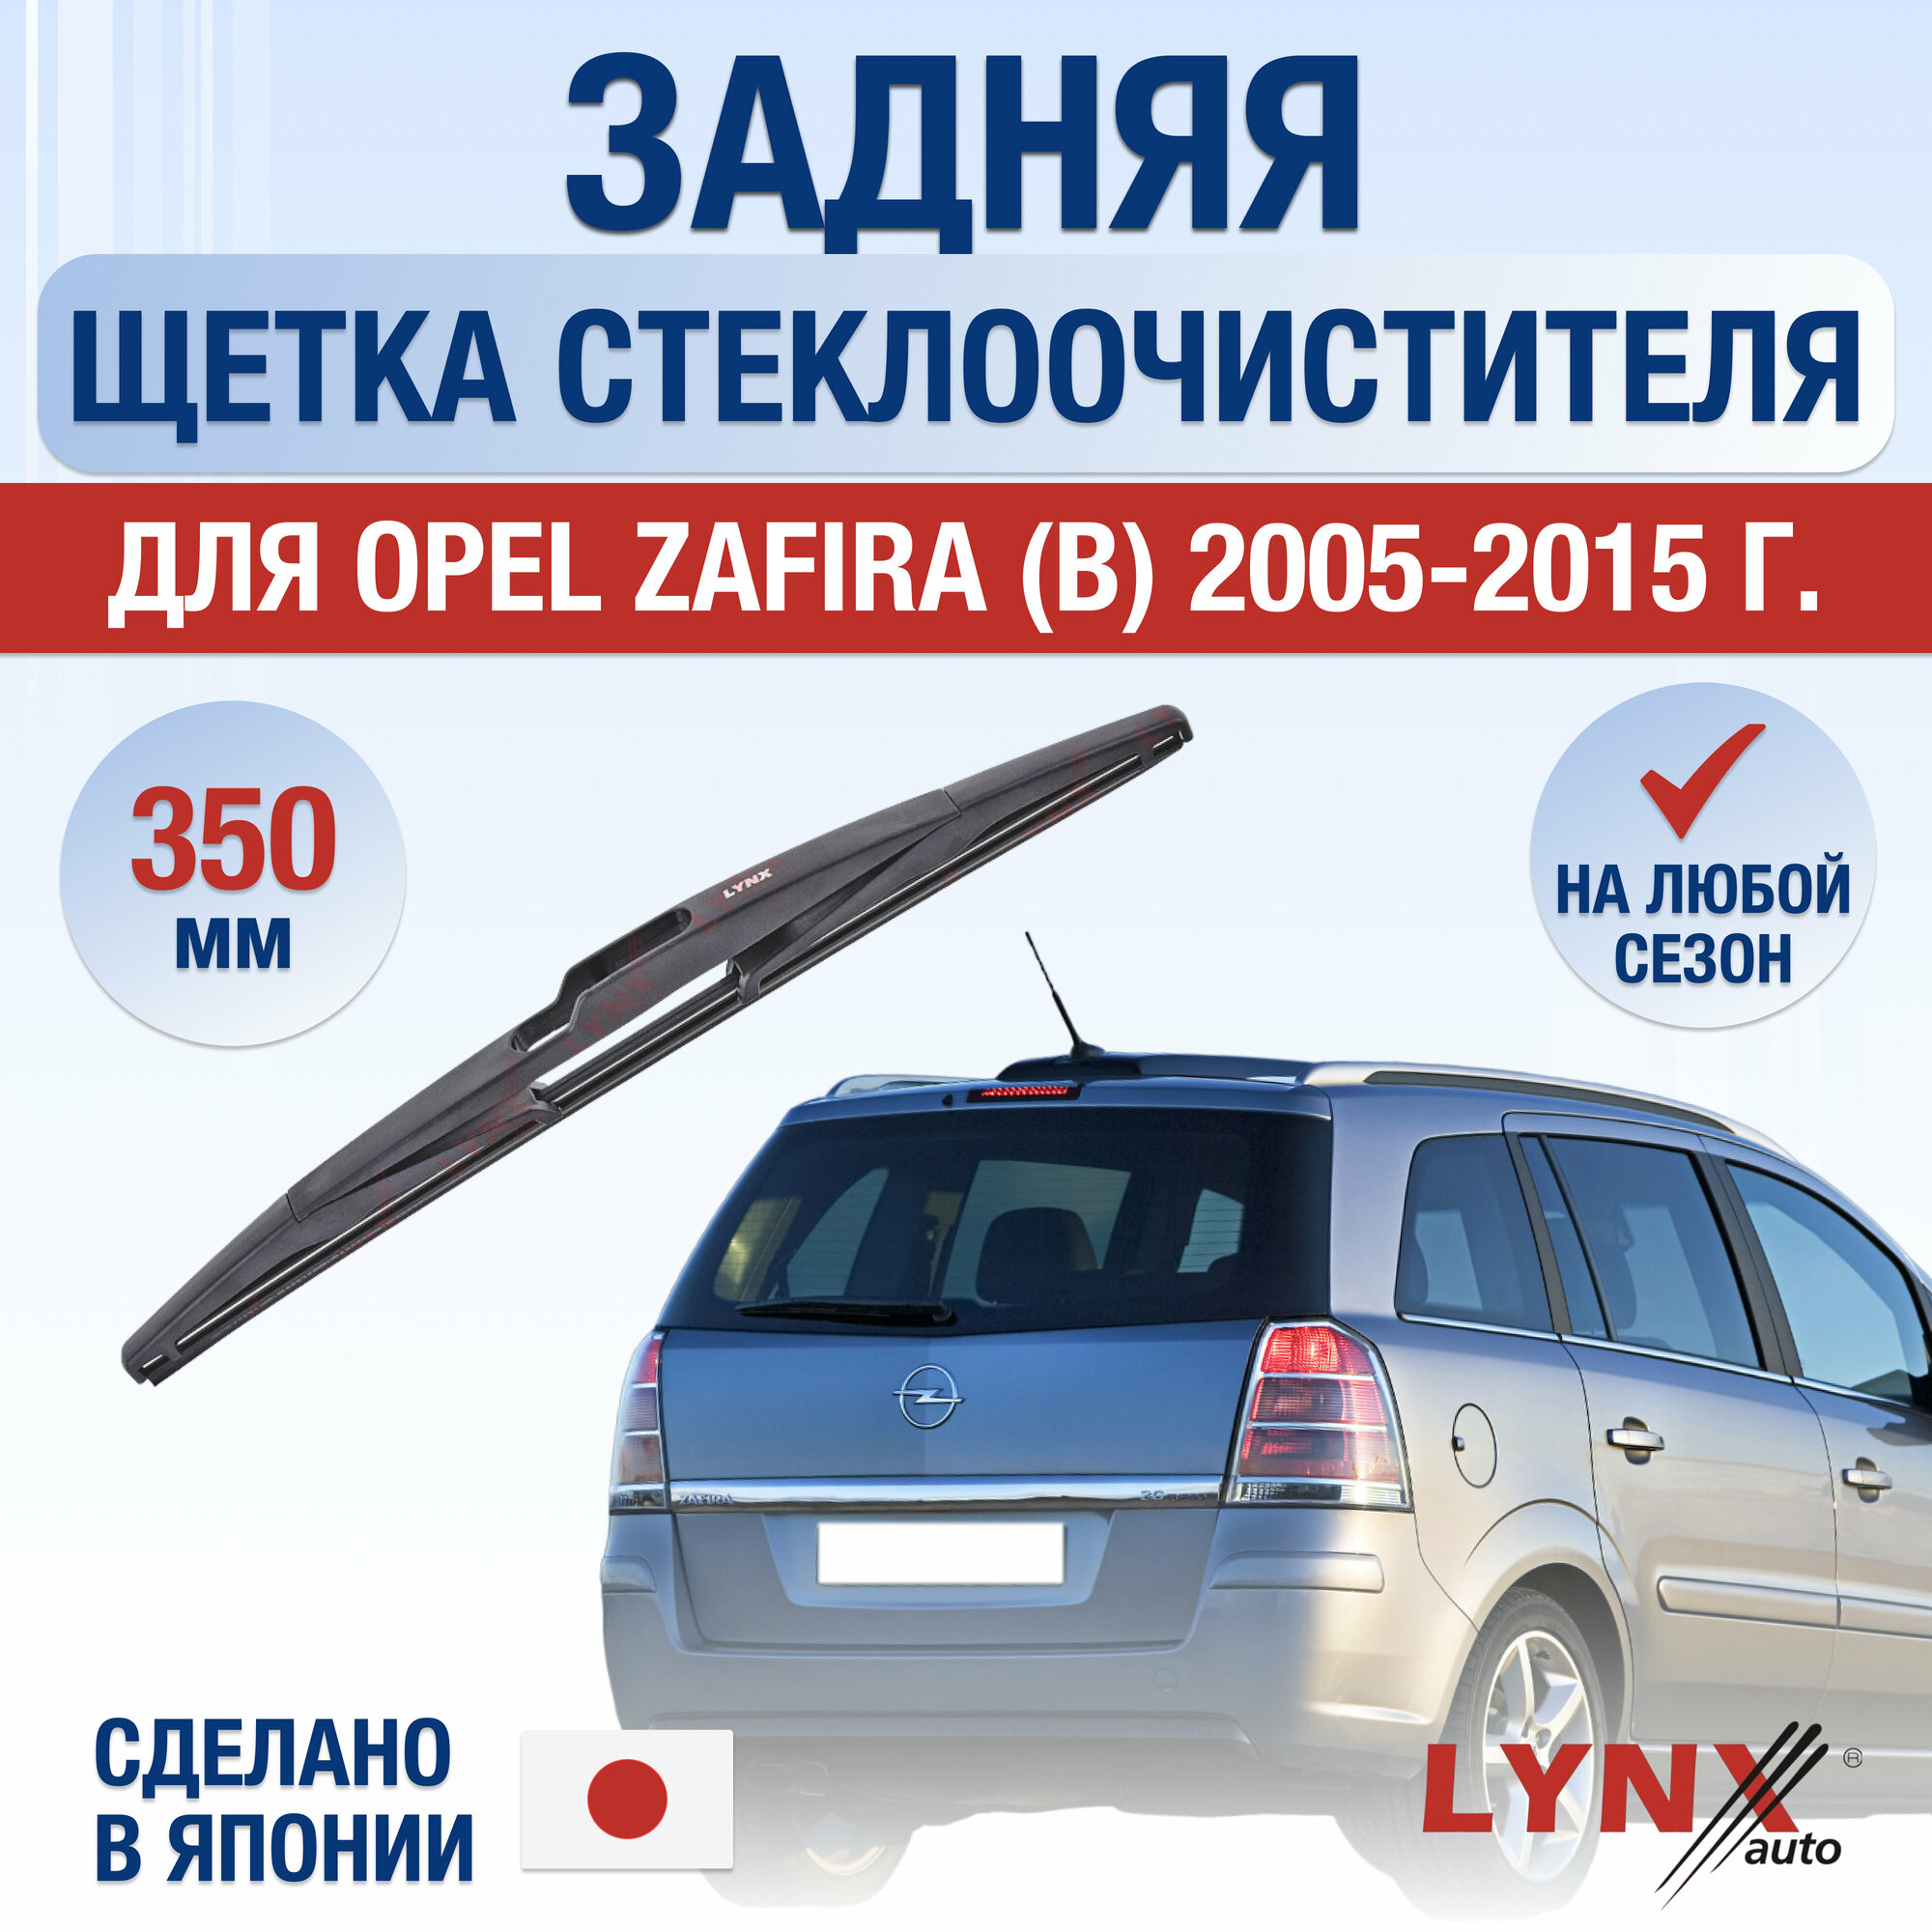 Задняя щетка стеклоочистителя для Opel Zafira B / 2005 2006 2007 2008 2009 2010 2011 2012 2013 2014 2015 / Задний дворник 350 мм Опель Зафира